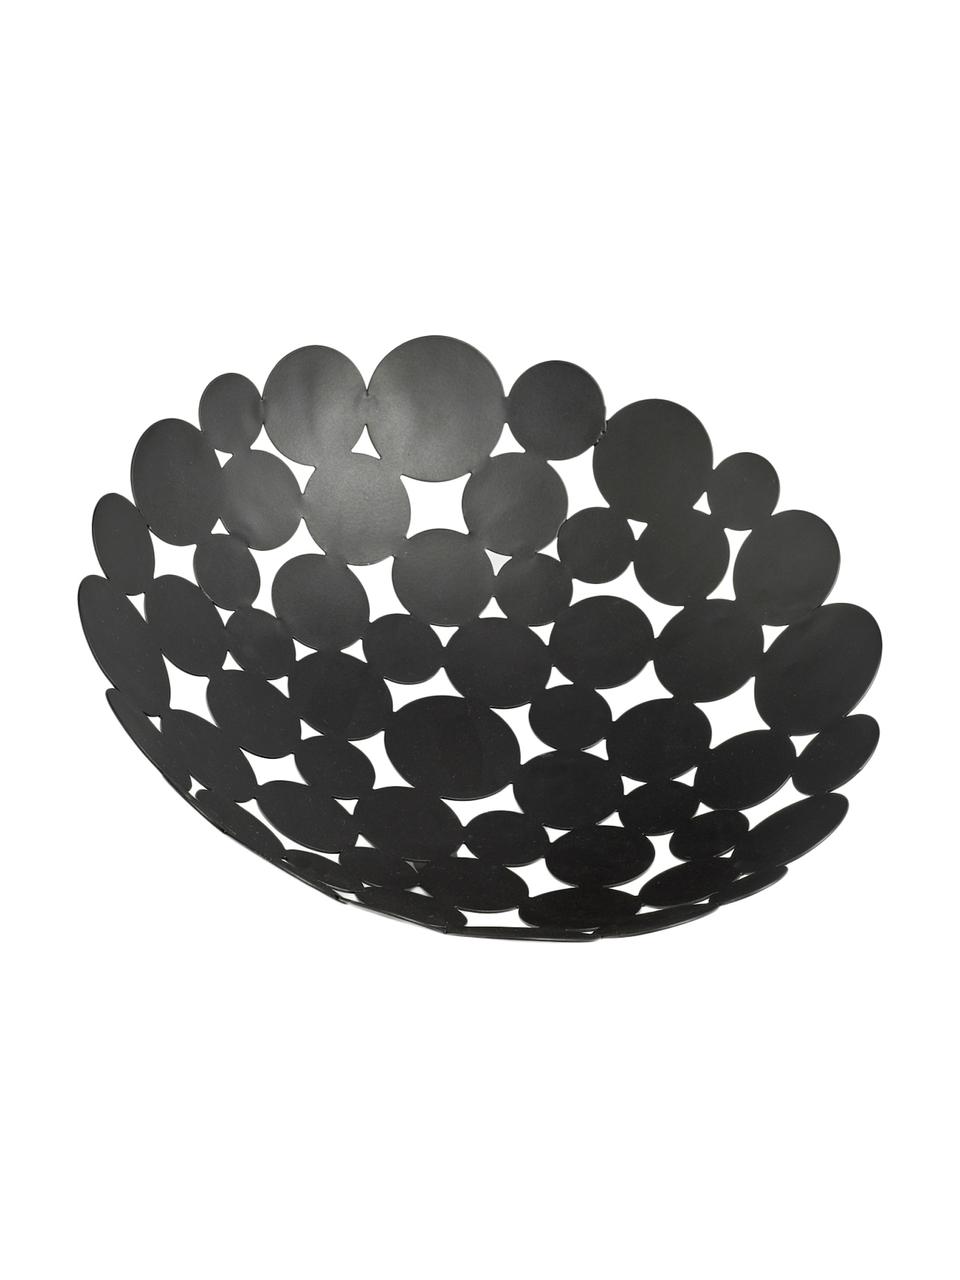 Frutero Drops, Metal, Negro, Ø 29 x Al 9 cm